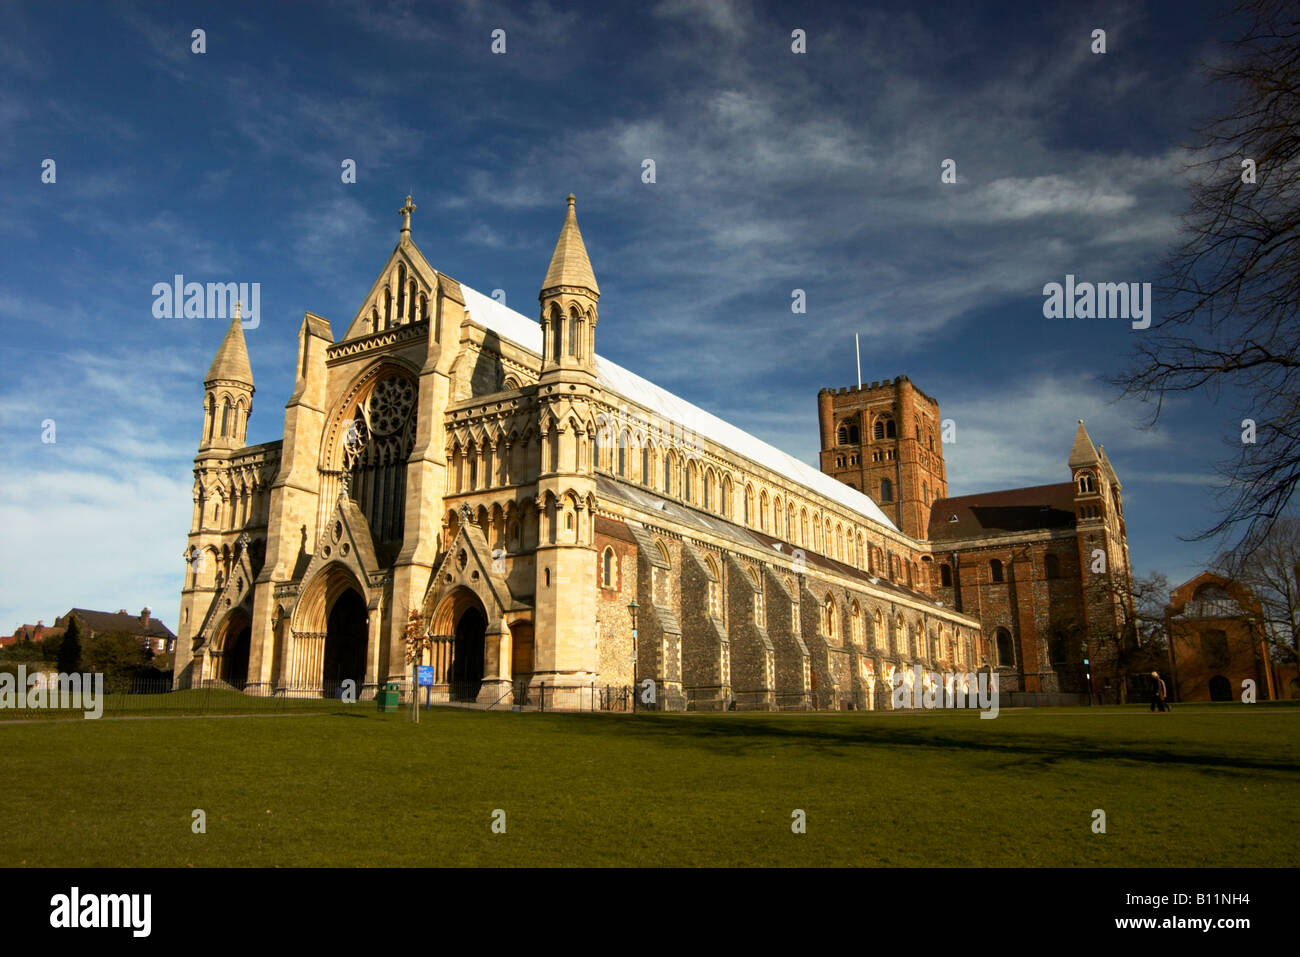 La Cathédrale de St Albans (autrefois la cathédrale et église abbatiale de St Alban), Hertfordshire, Royaume-Uni Banque D'Images